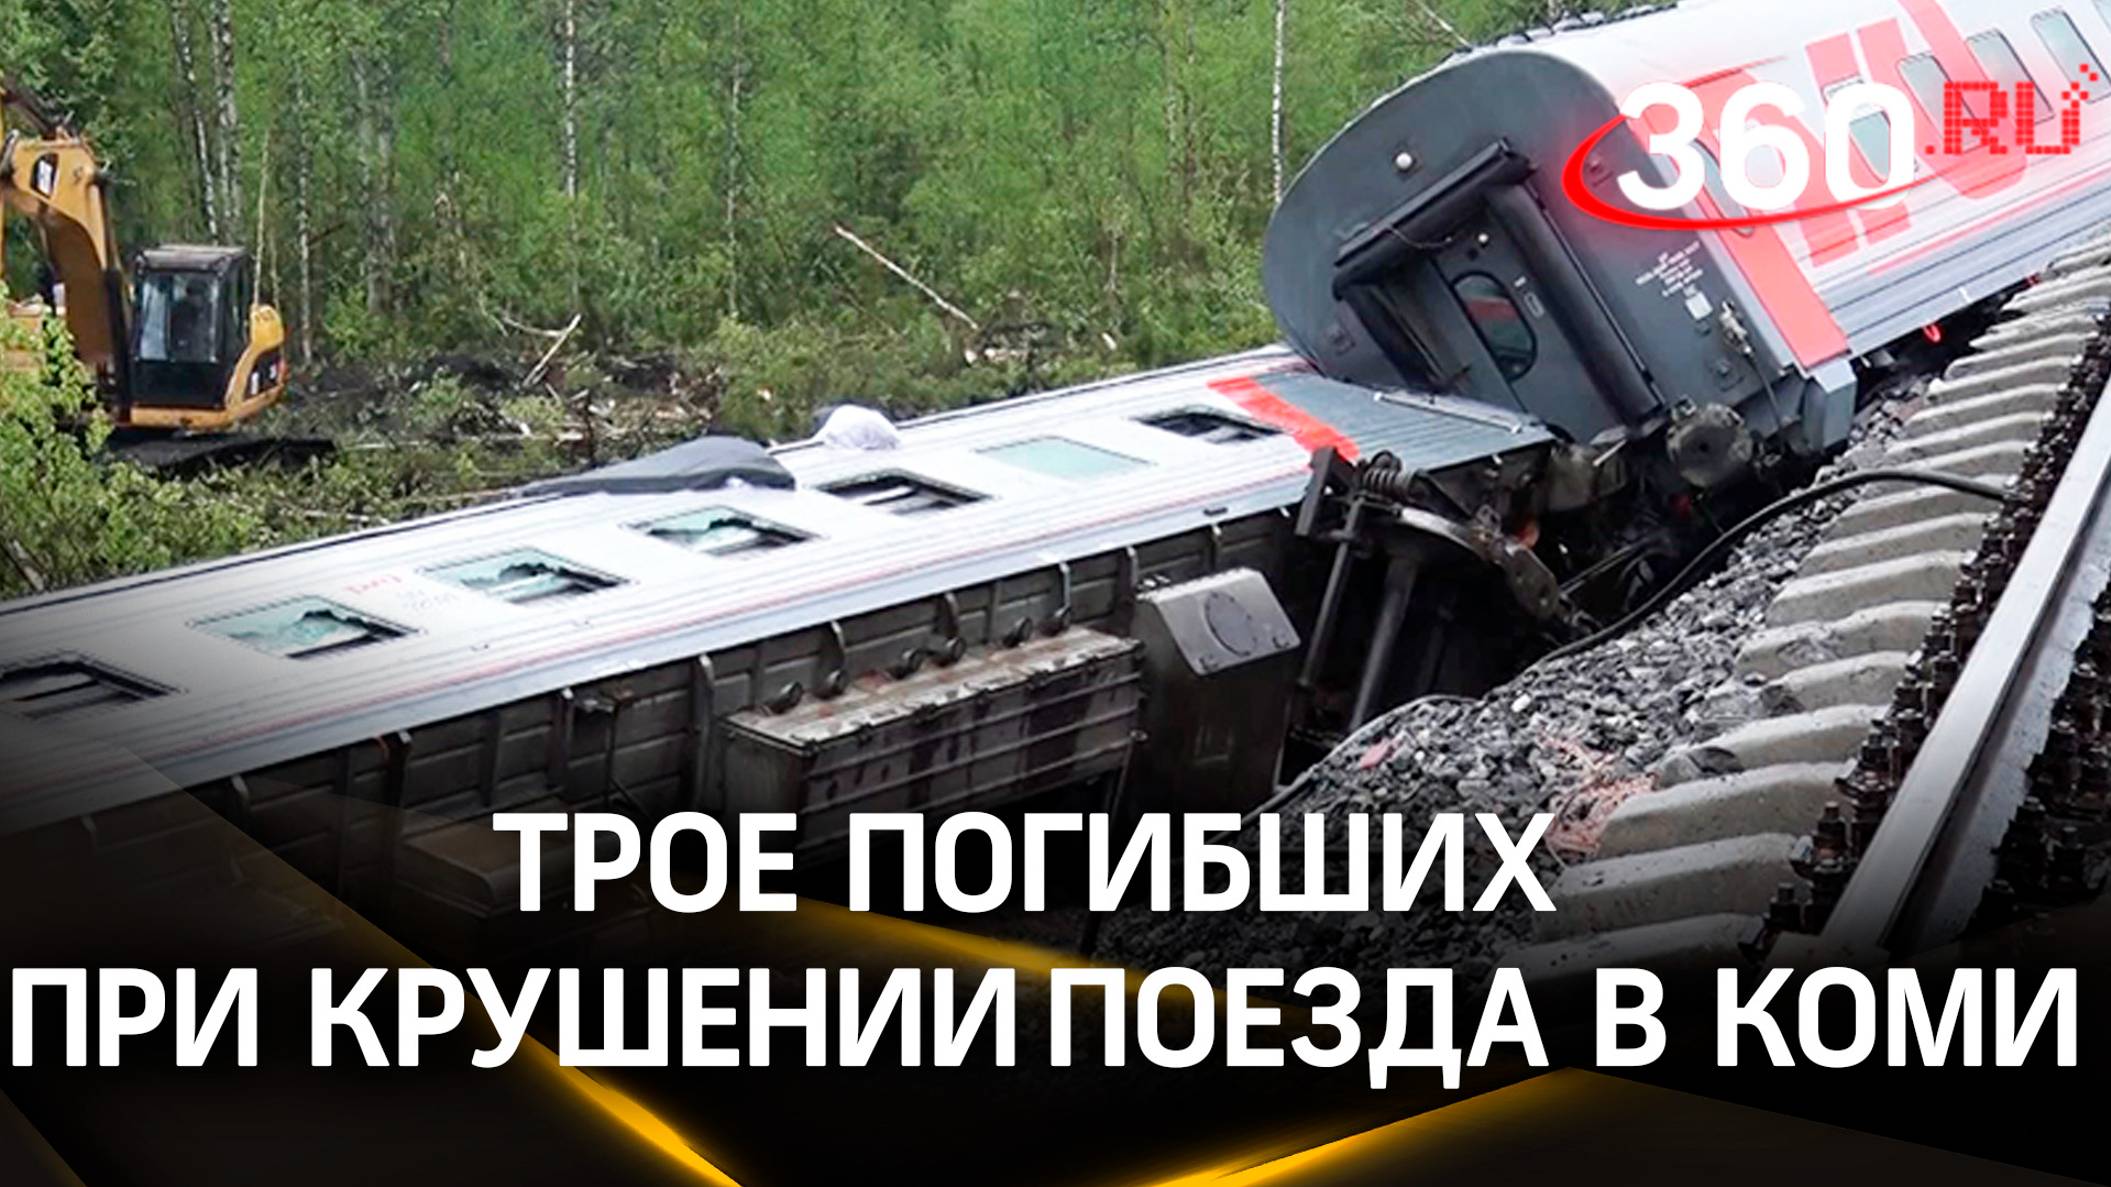 Трое погибших в разбившемся поезде в Коми: тело нашли под вагоном